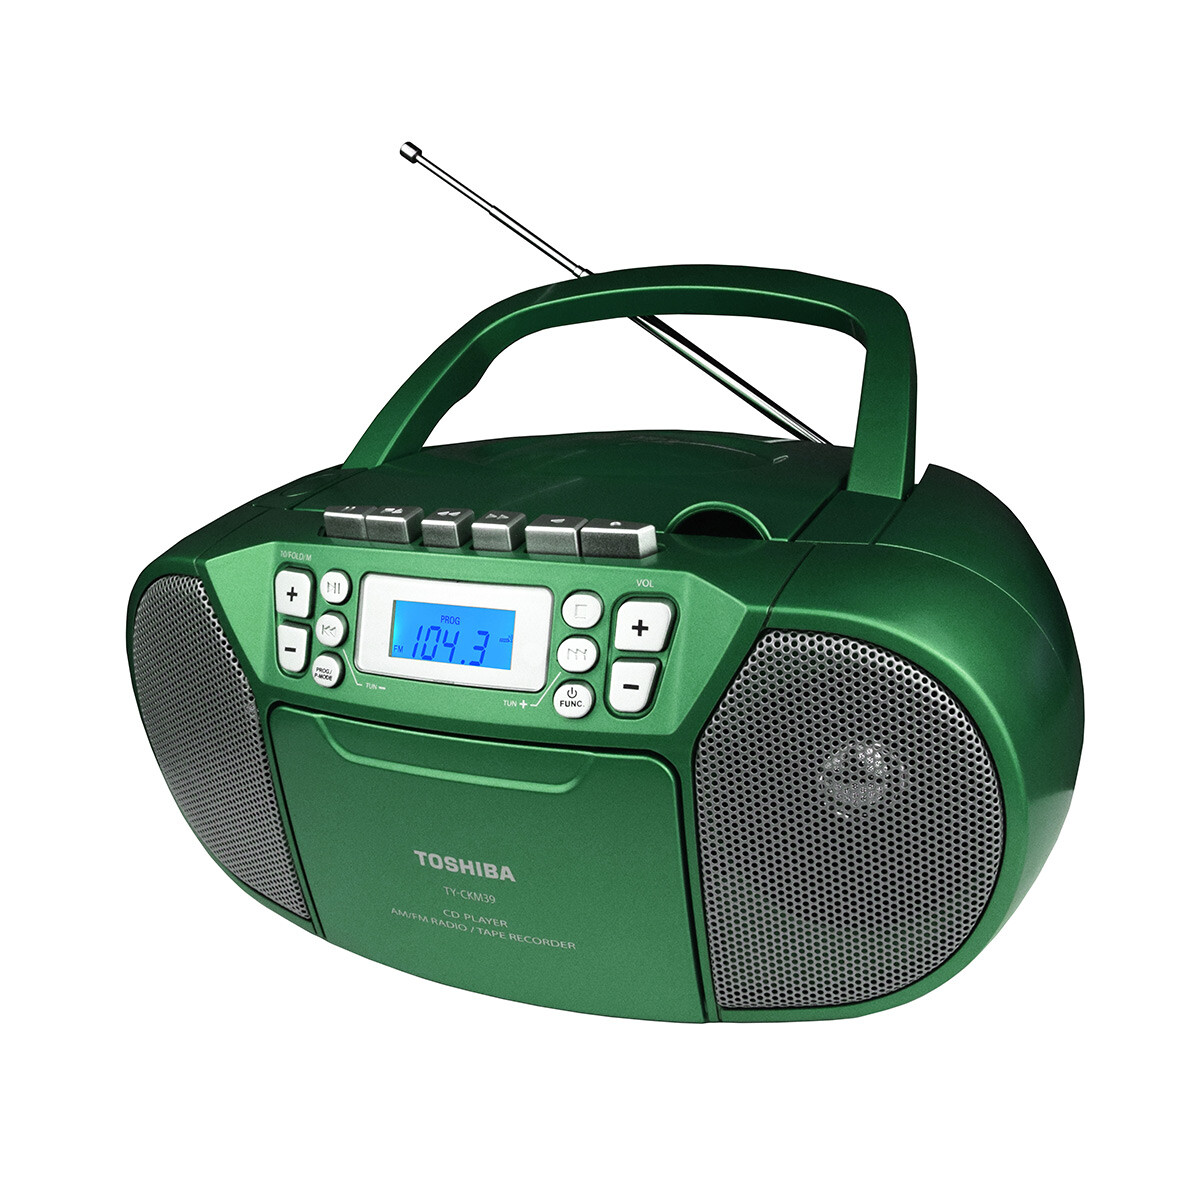 Radio Grabador Toshiba Ckm39gb Verde (t110) 